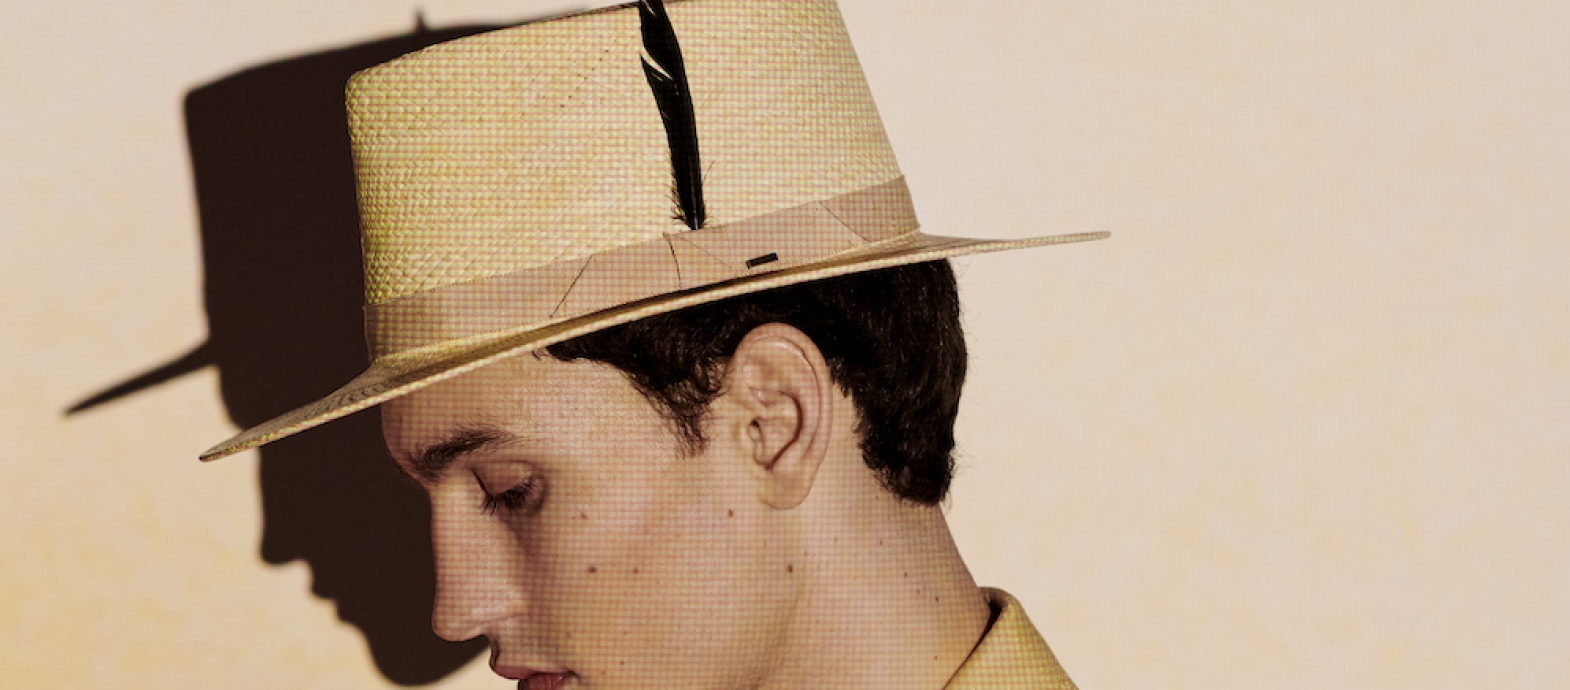 Zomer Fedora hoed van Bailey Hats, een heren hoedencollectie met een modern Amerikaanse twist